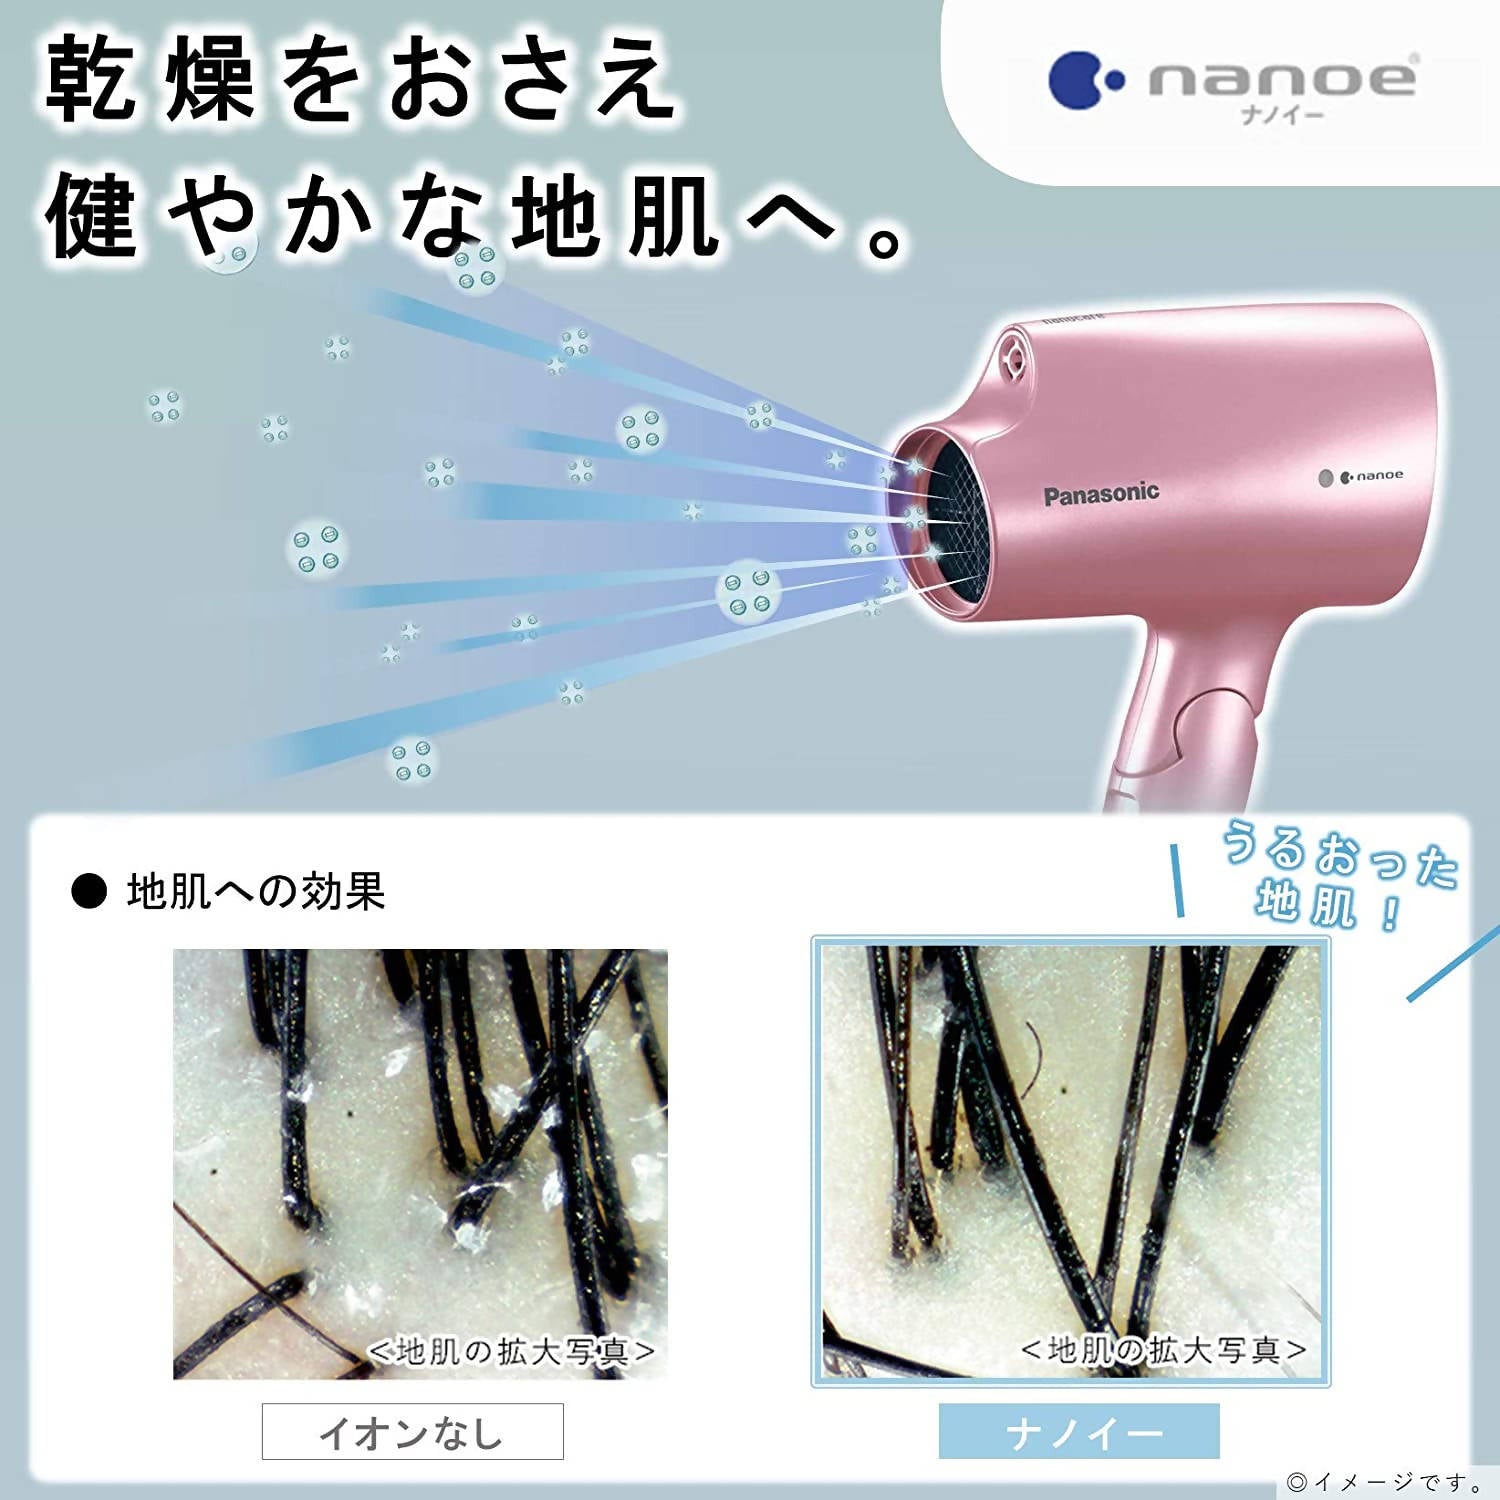 PANASONIC Nano care Hair Dryer EH-NA98 Pink Care for hair scalp skin AC  220V | eBay